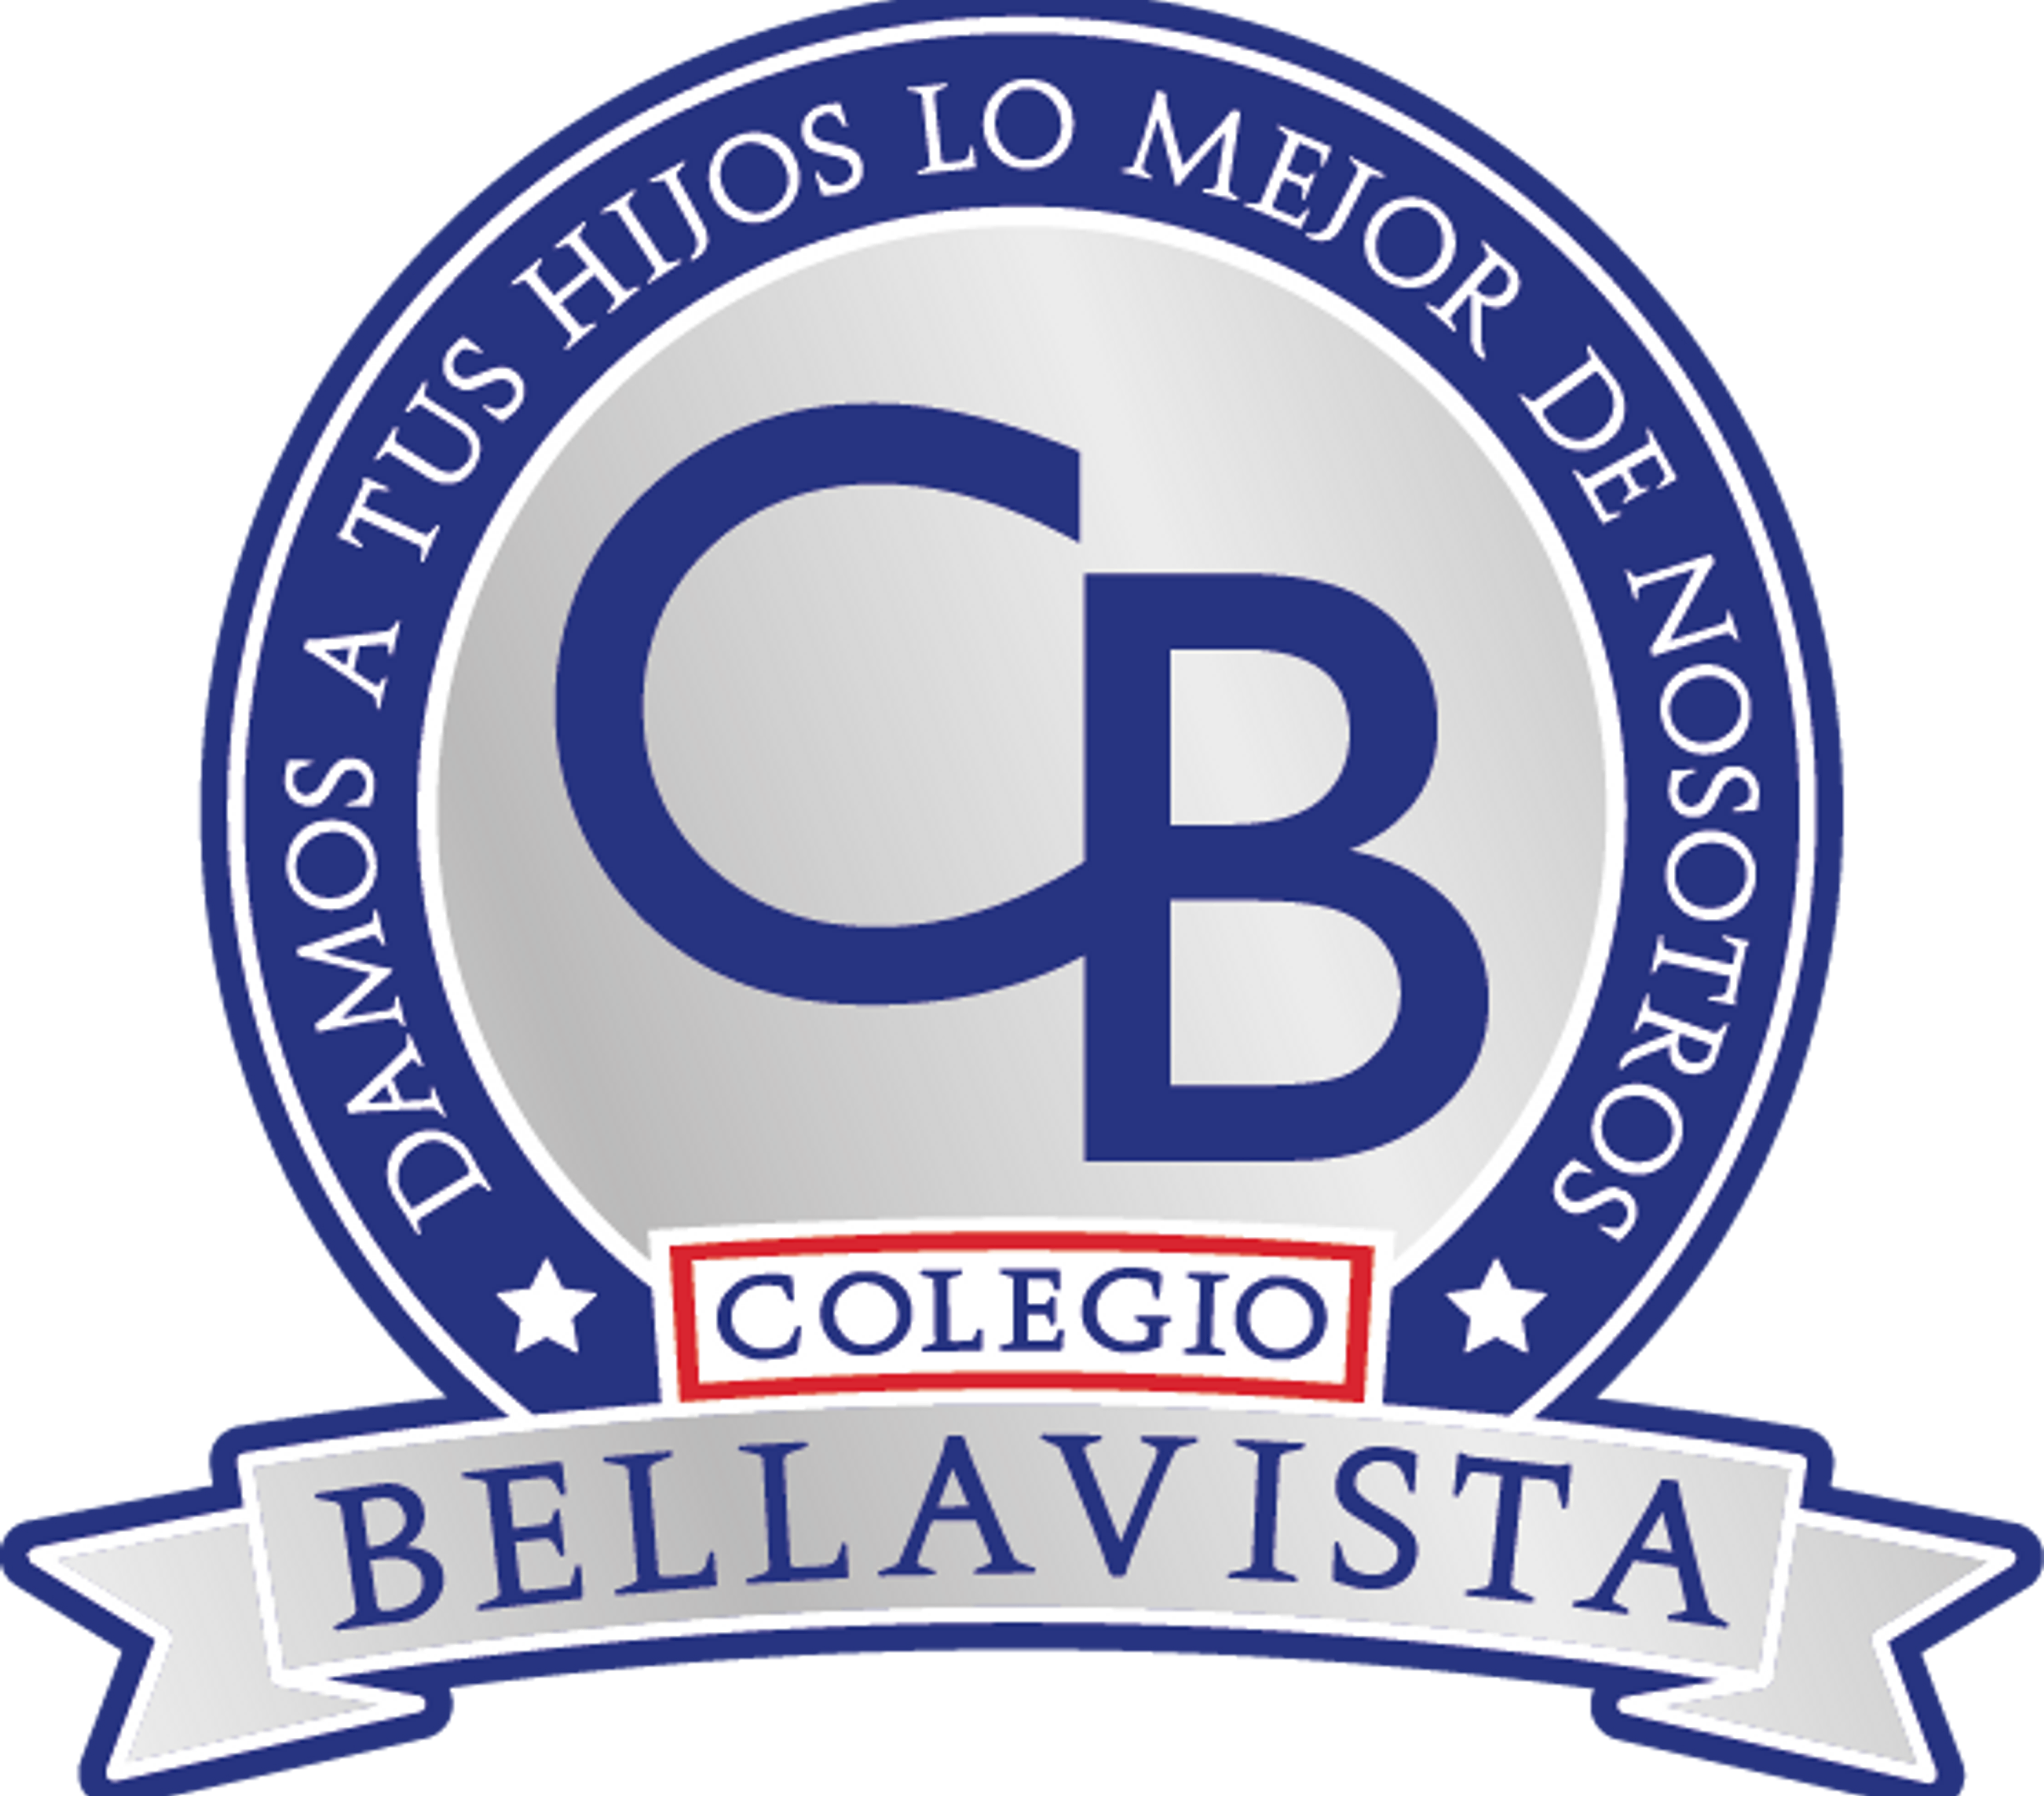 colegio bellavista logo